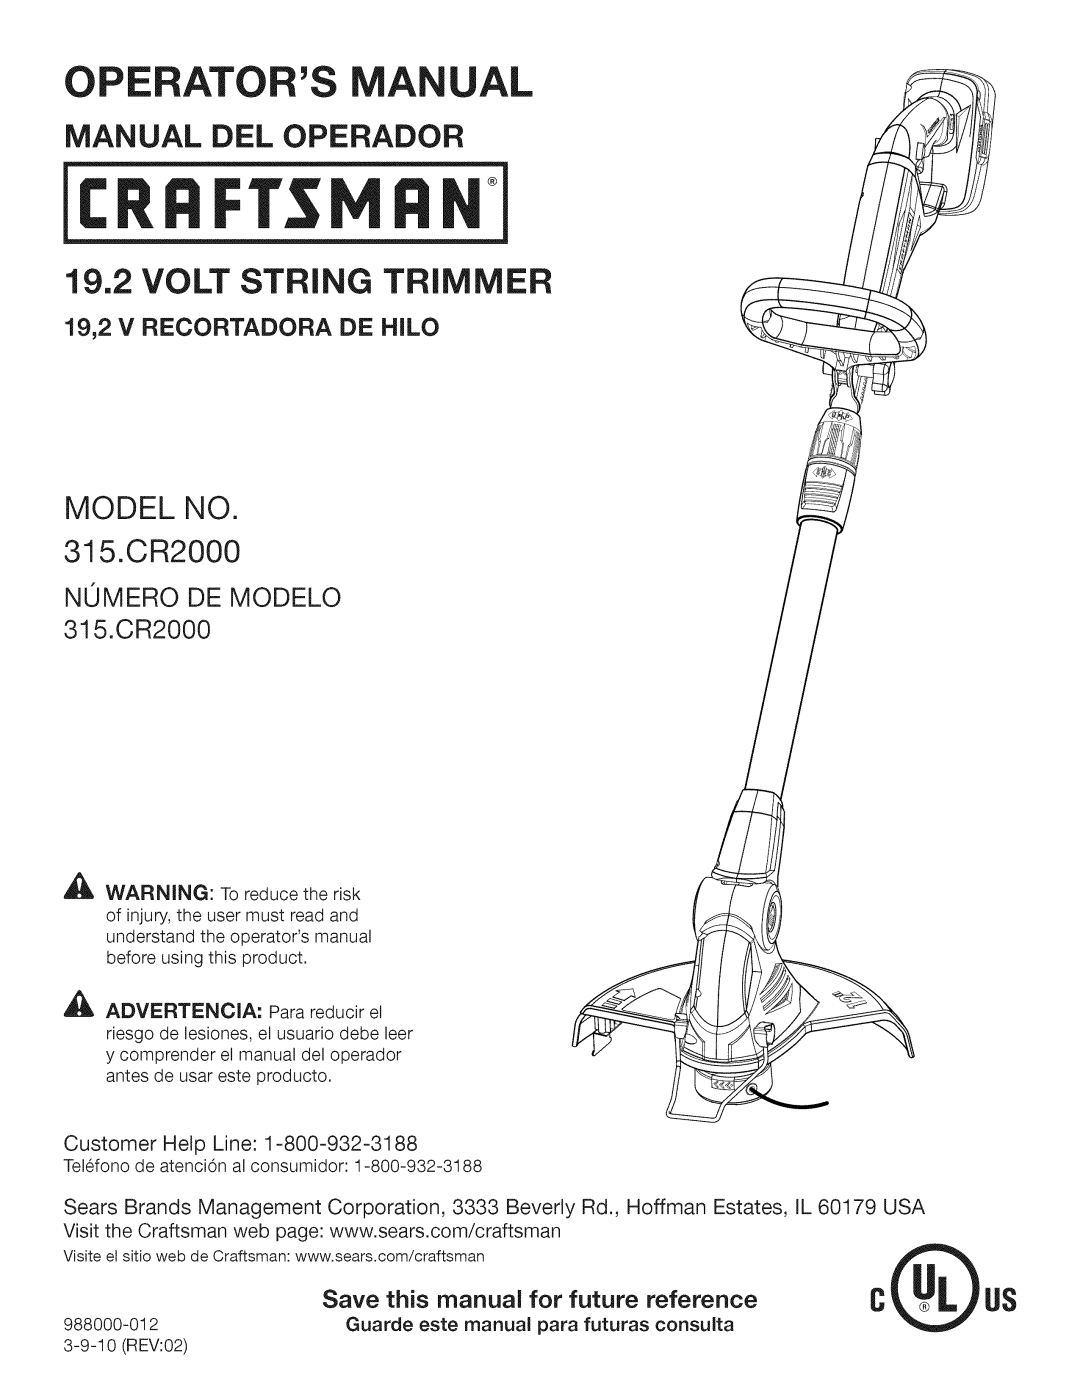 Craftsman 315.CR2000 manual Nomero De Modelo, 19,2 V RECORTADORA DE HILO, Perators Manual, 19,2 VOLT STRING TRIMMER 